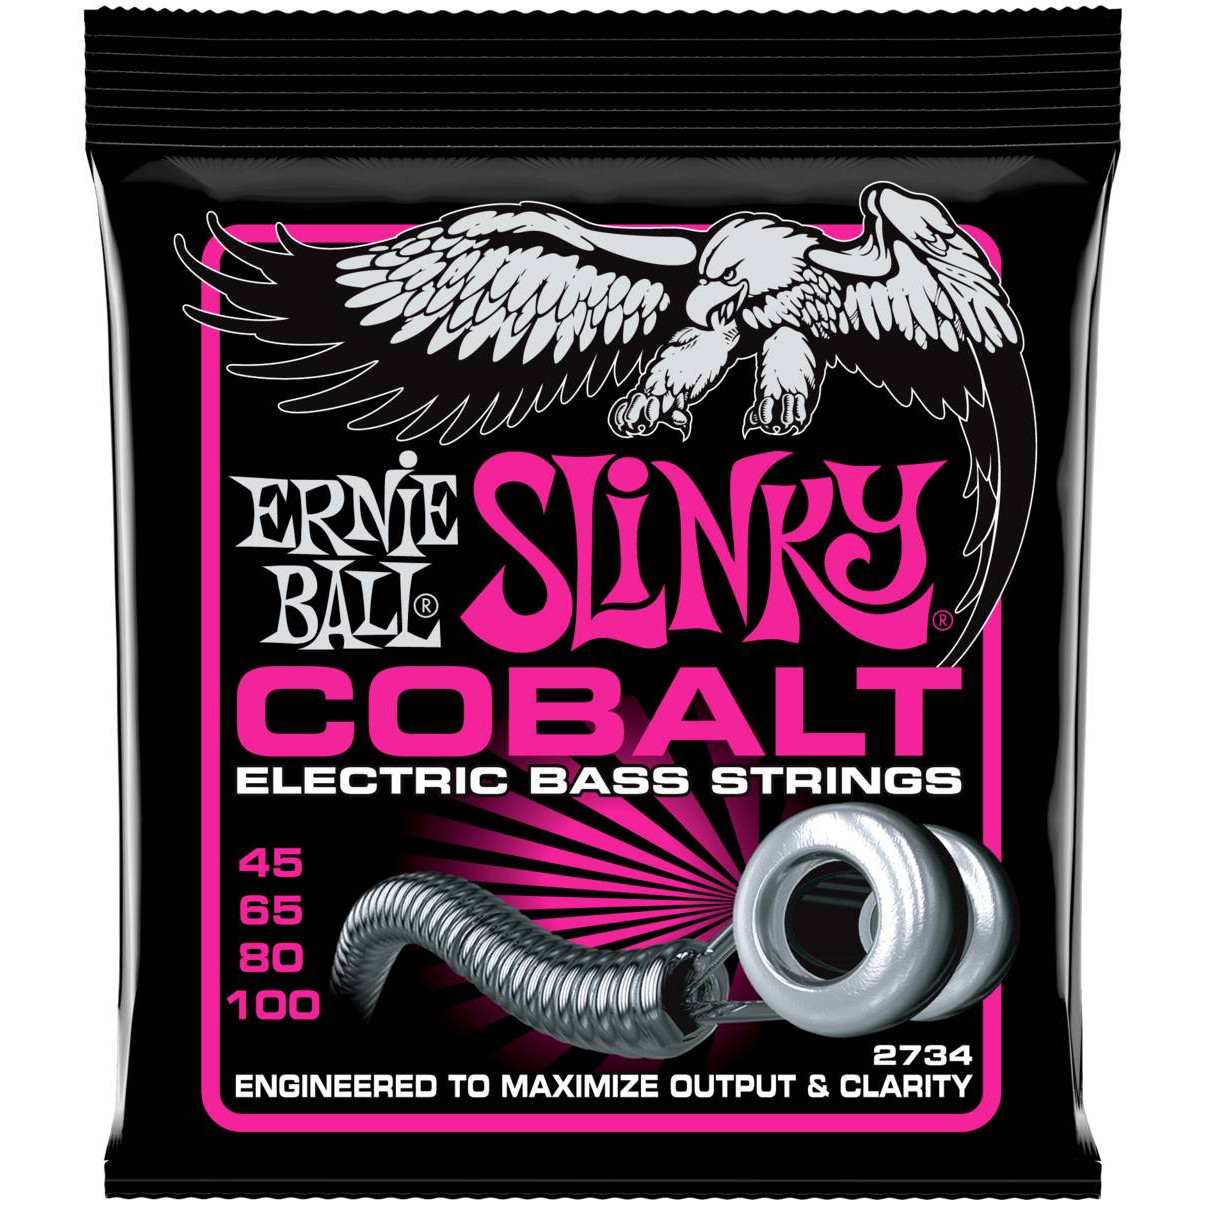 Струны Ernie Ball 2734 Slinky Cobalt Super Bass струны ernie ball 2736 slinky cobalt bass 5